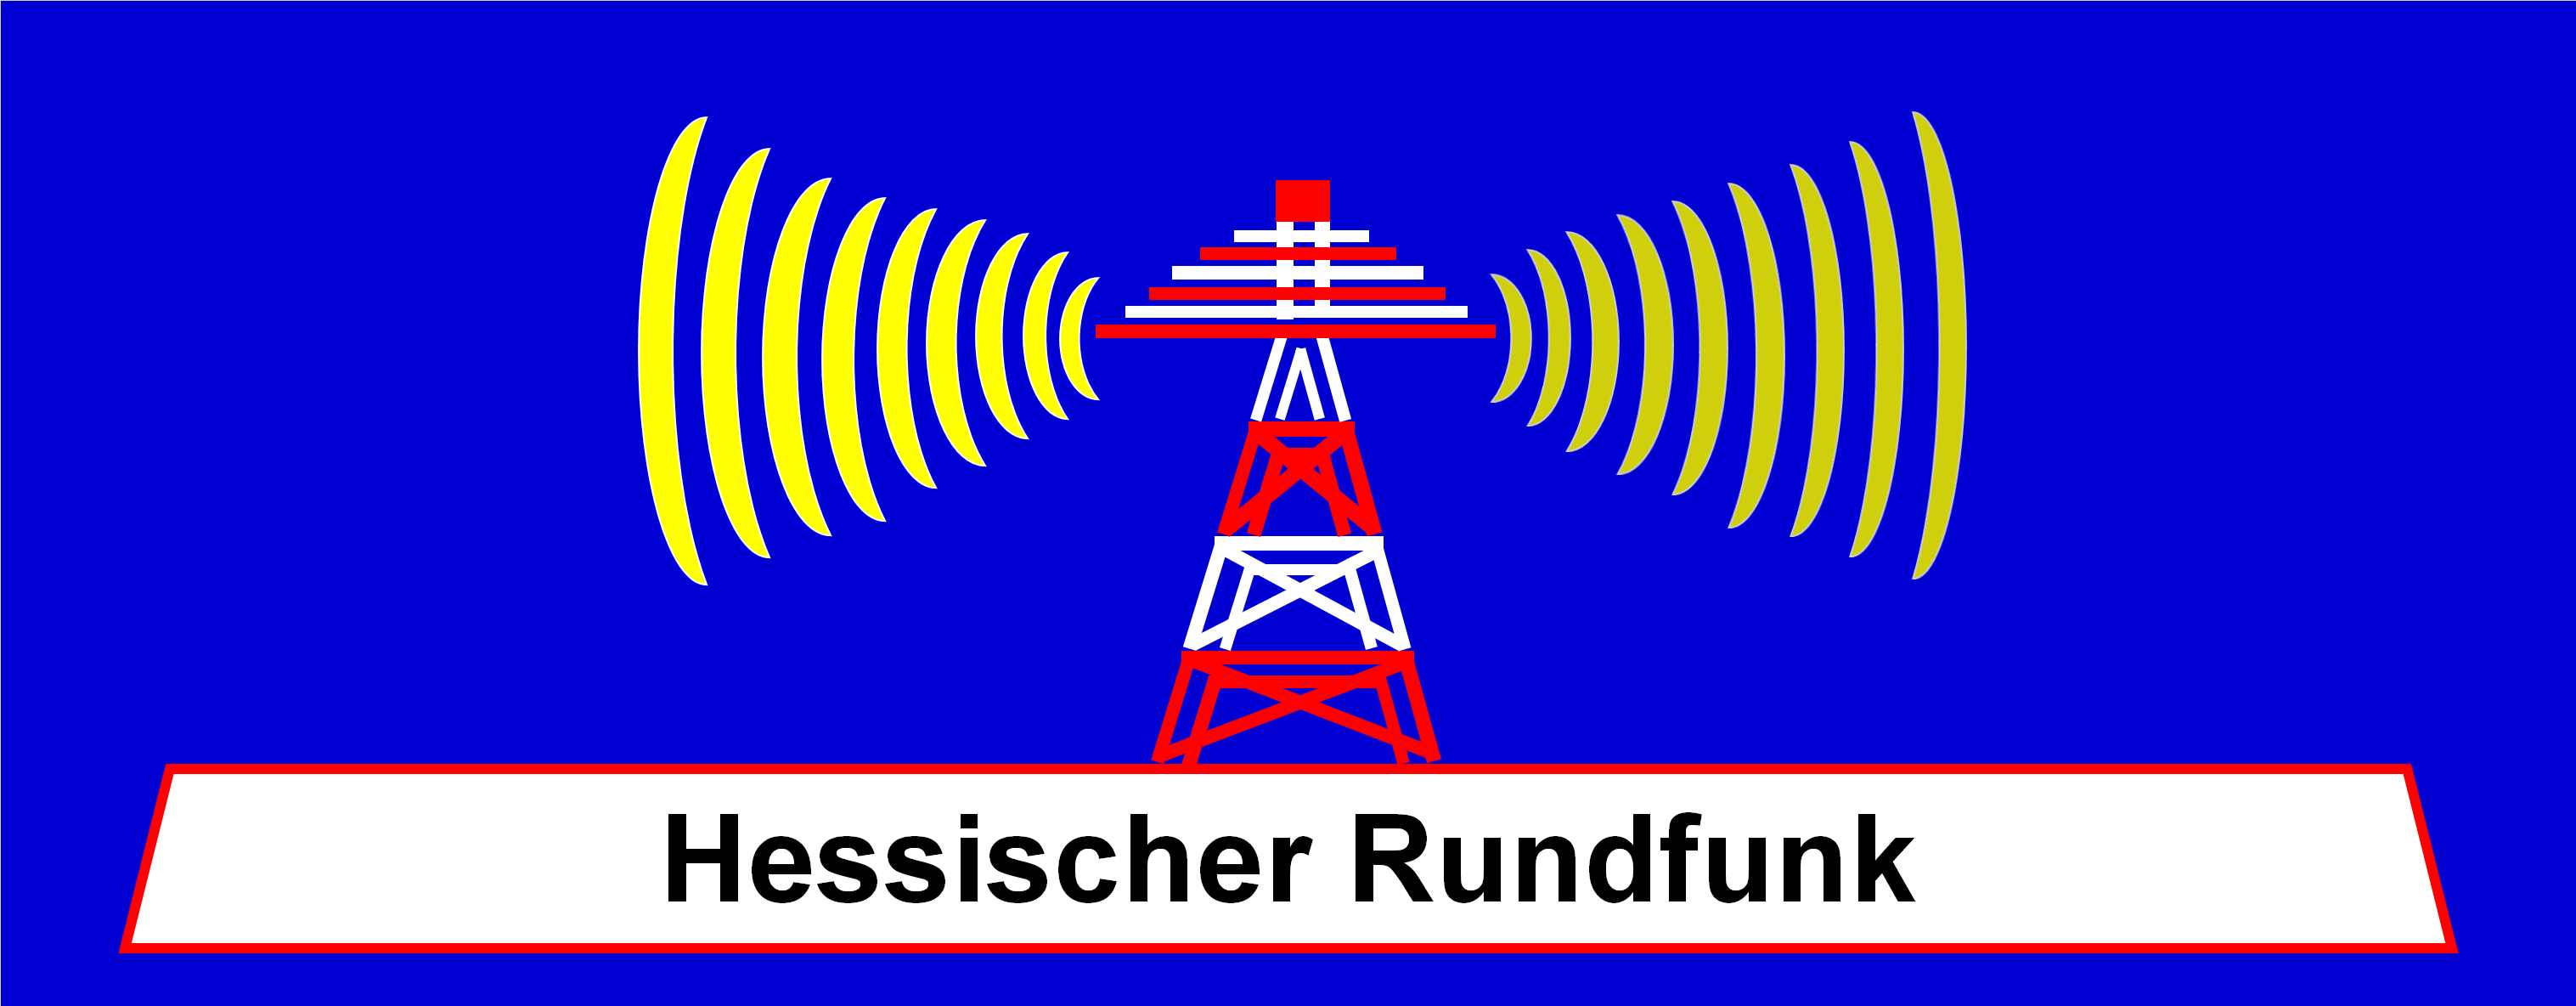 Hessischer Rundfunk